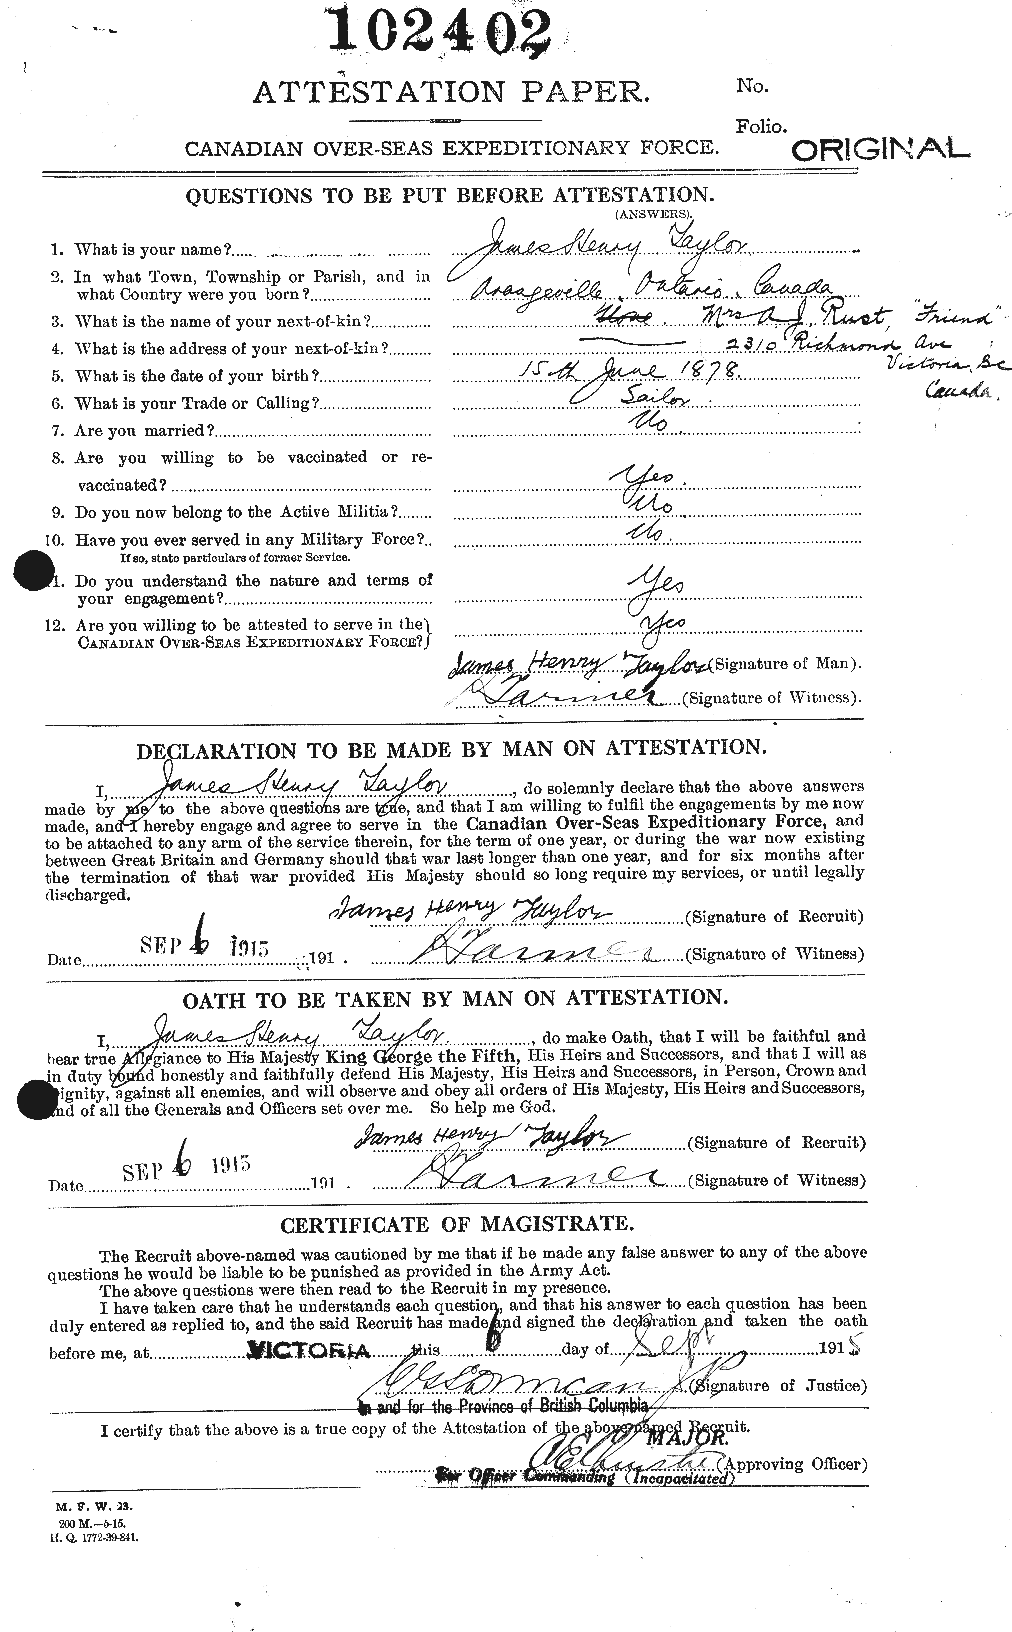 Dossiers du Personnel de la Première Guerre mondiale - CEC 626927a